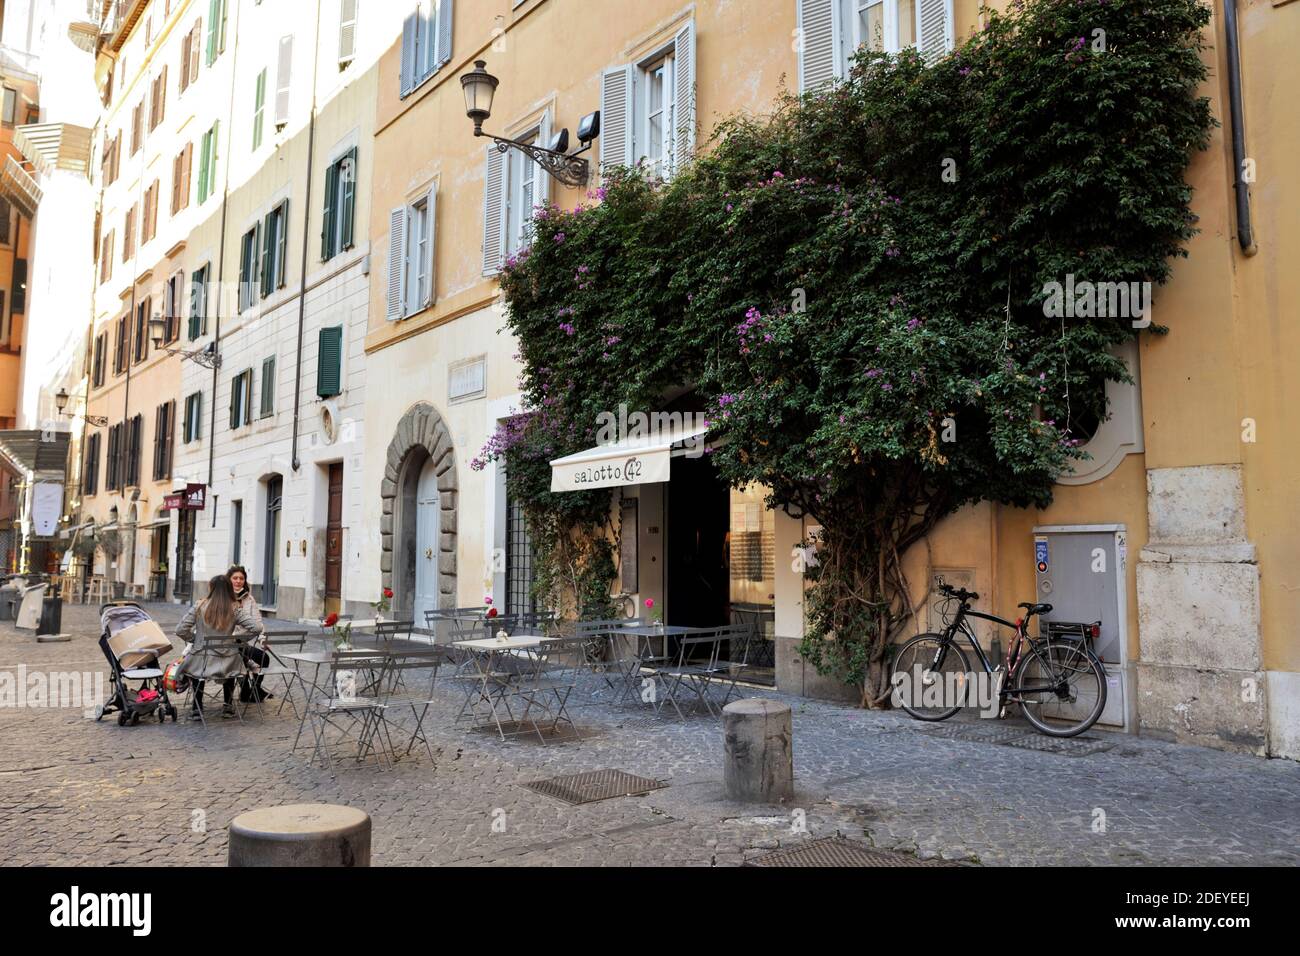 Italy, Rome, Piazza di Pietra, Salotto 42 cafe Stock Photo